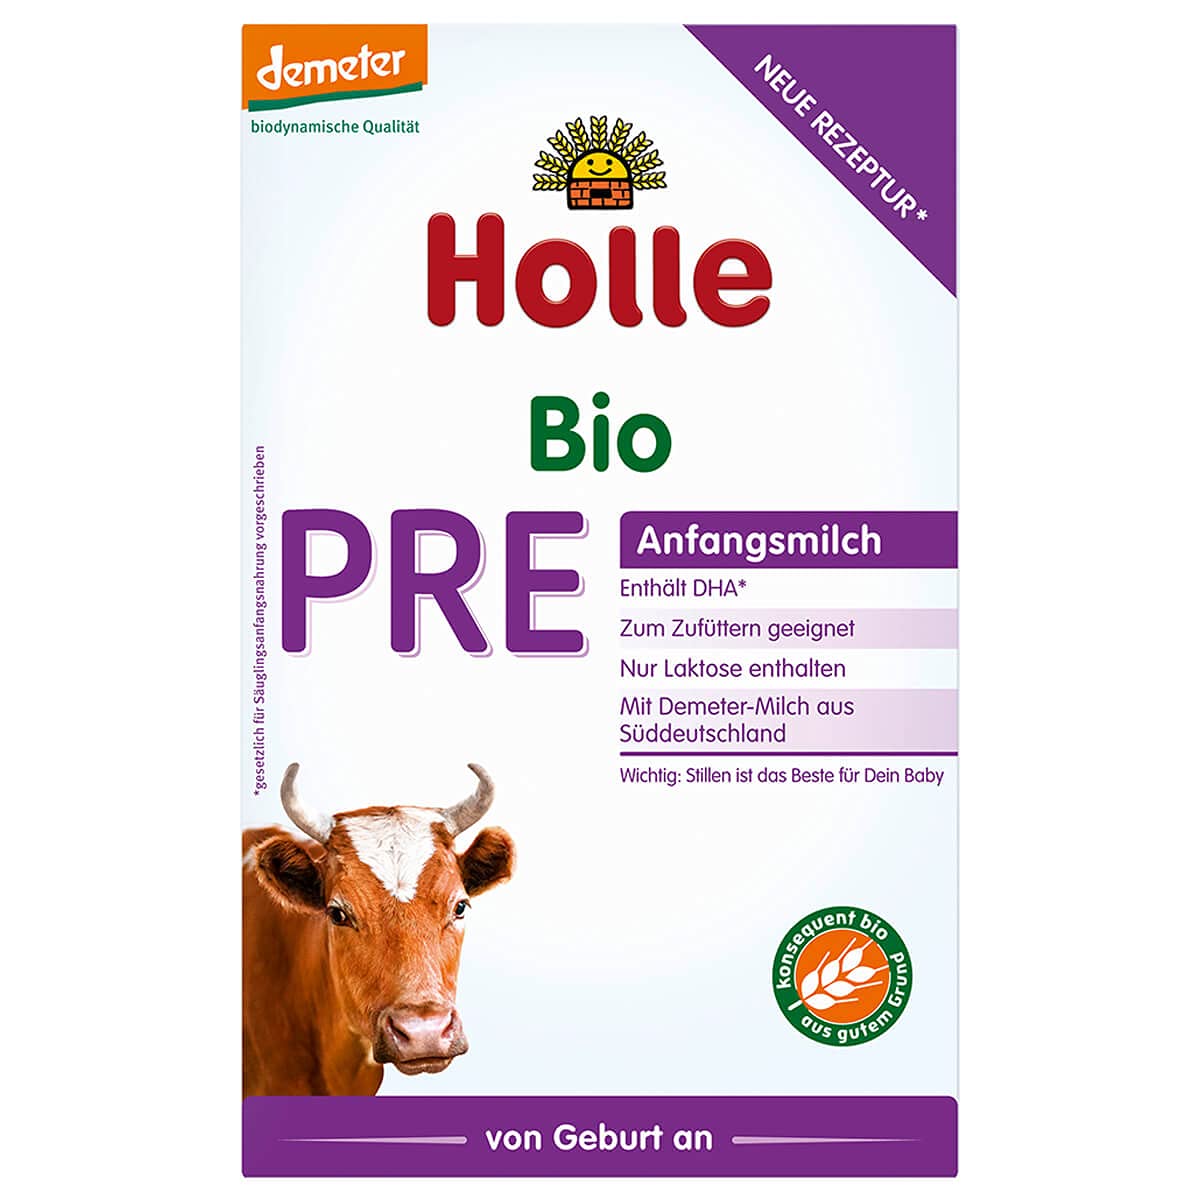 Holle - Pre-Anfangsmilch - 0,4 kg - 5er Pack